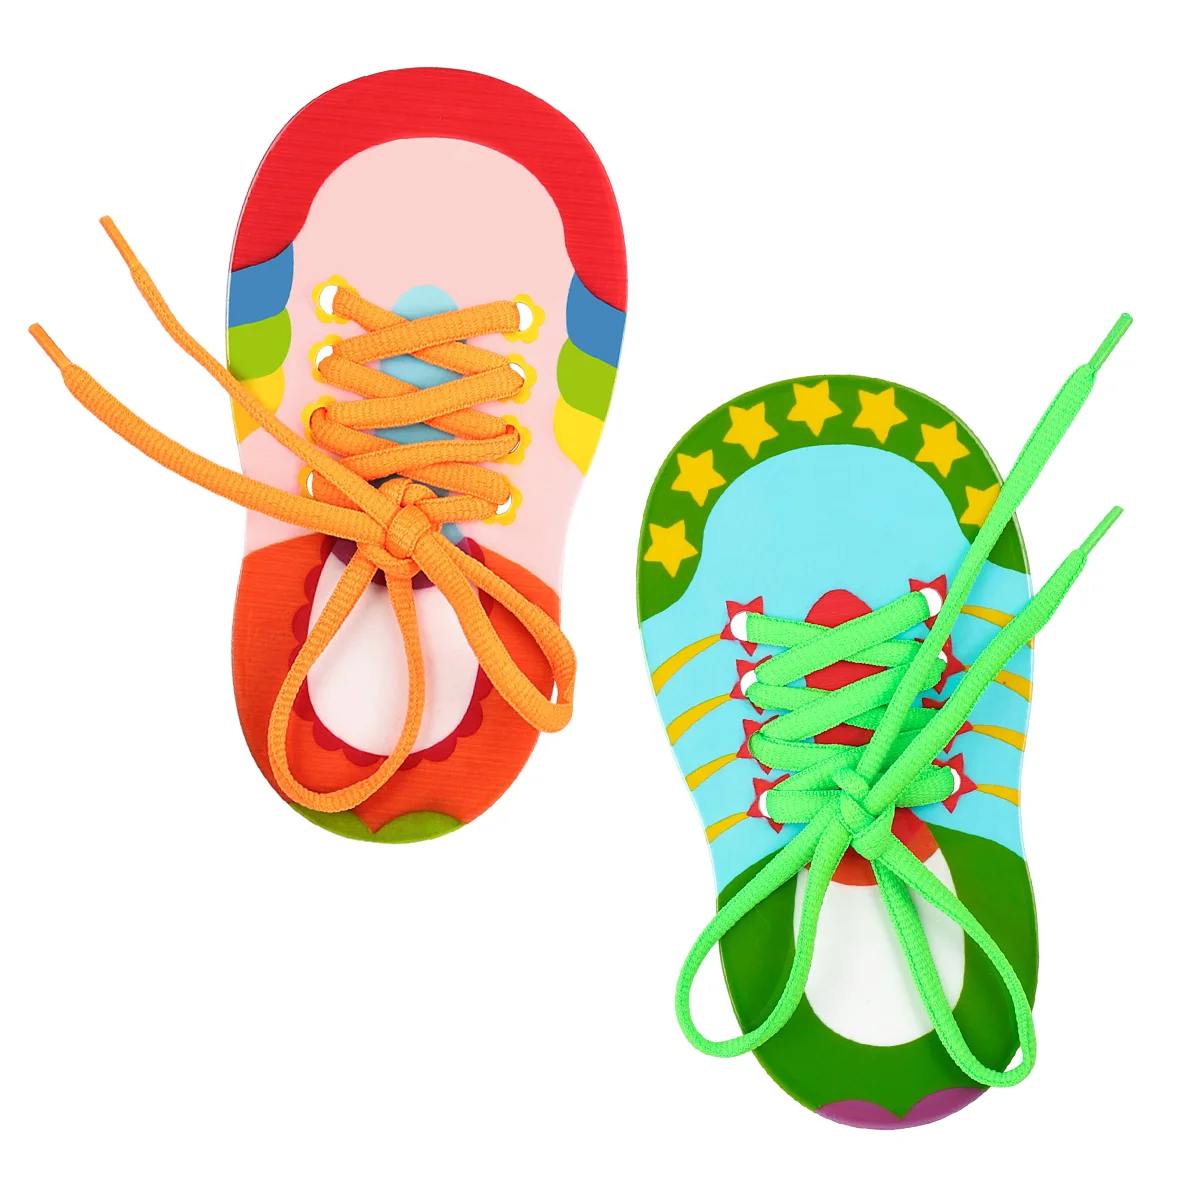 

Обувные шнурки для обуви, детские обувные шнурки для обучения нитку, обувные шнурки, модели шнурков, деревянные шнурки